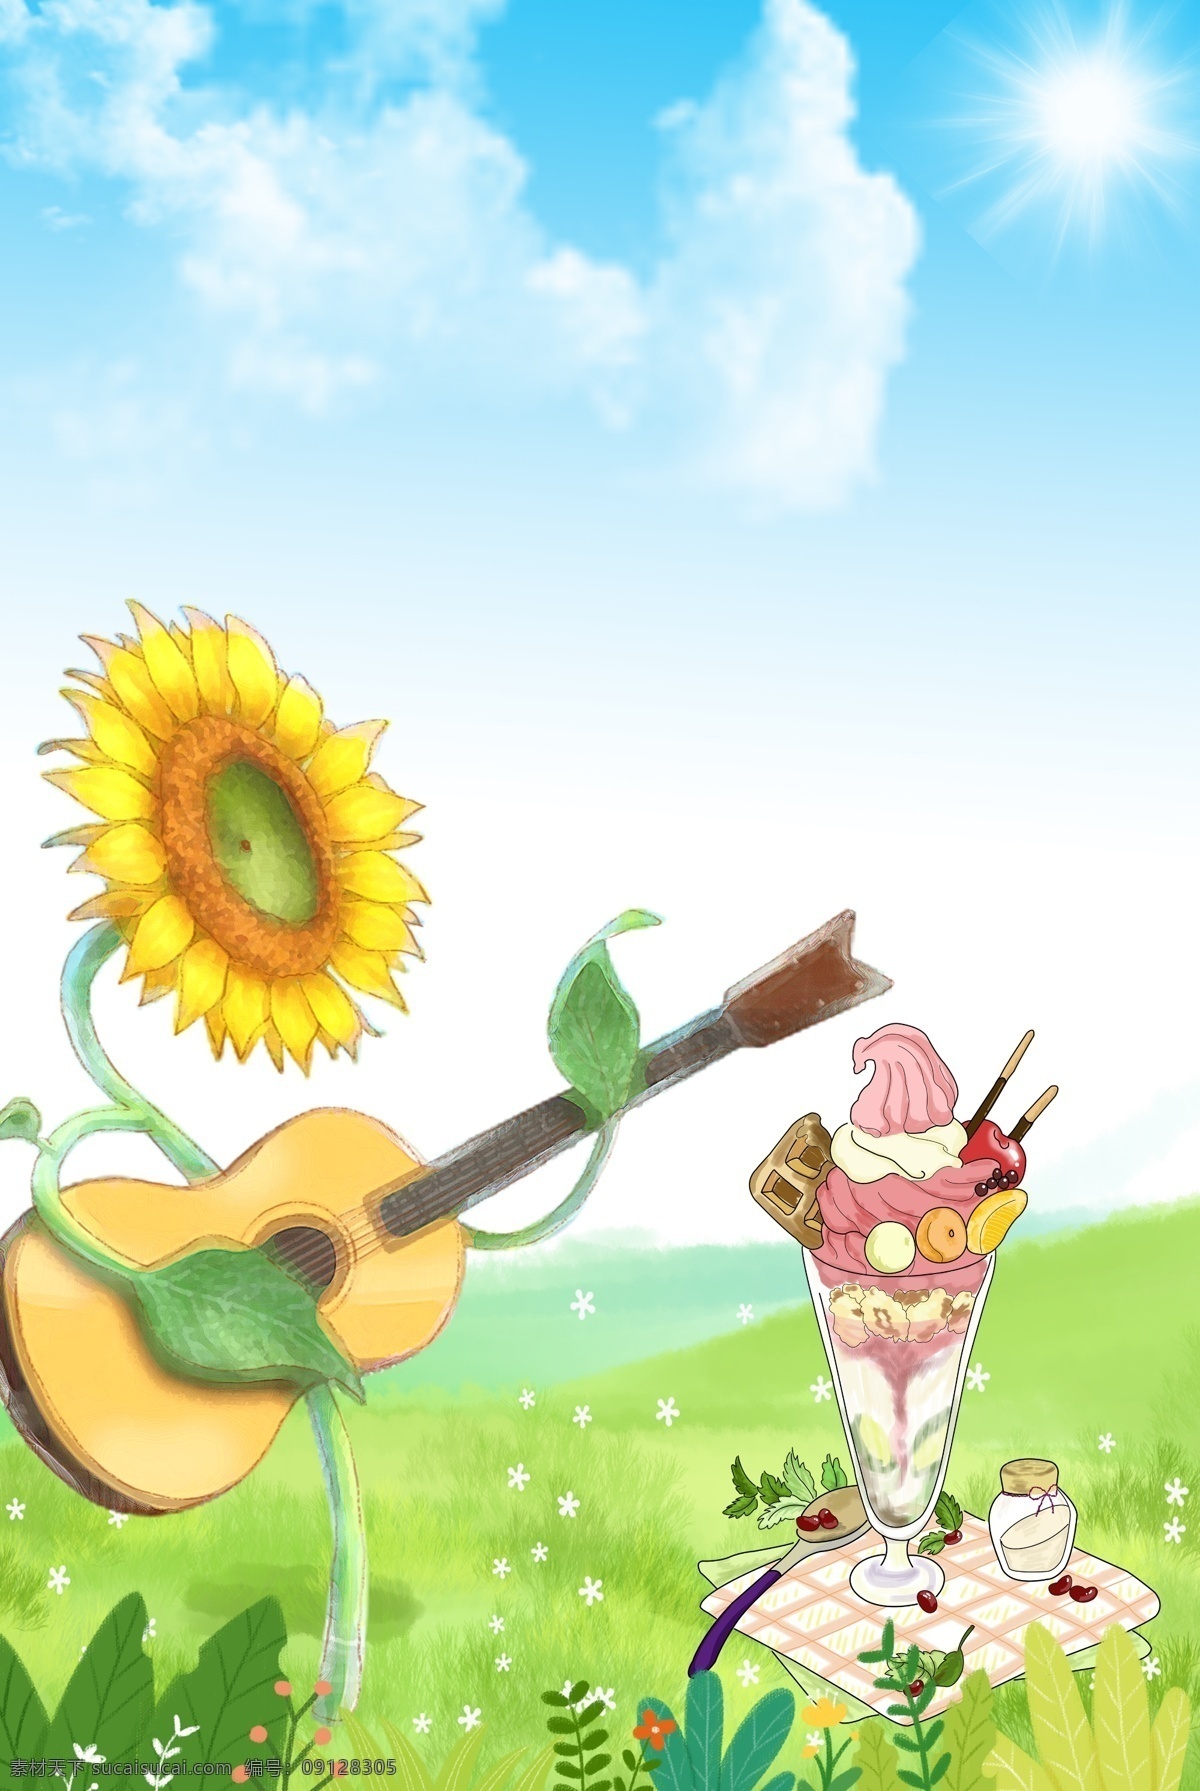 夏日 向日葵 弹 吉他 夏天 饮料 冰激淋 清凉 凉爽 冰镇 弹吉他 夏季 草地 蓝天 白云